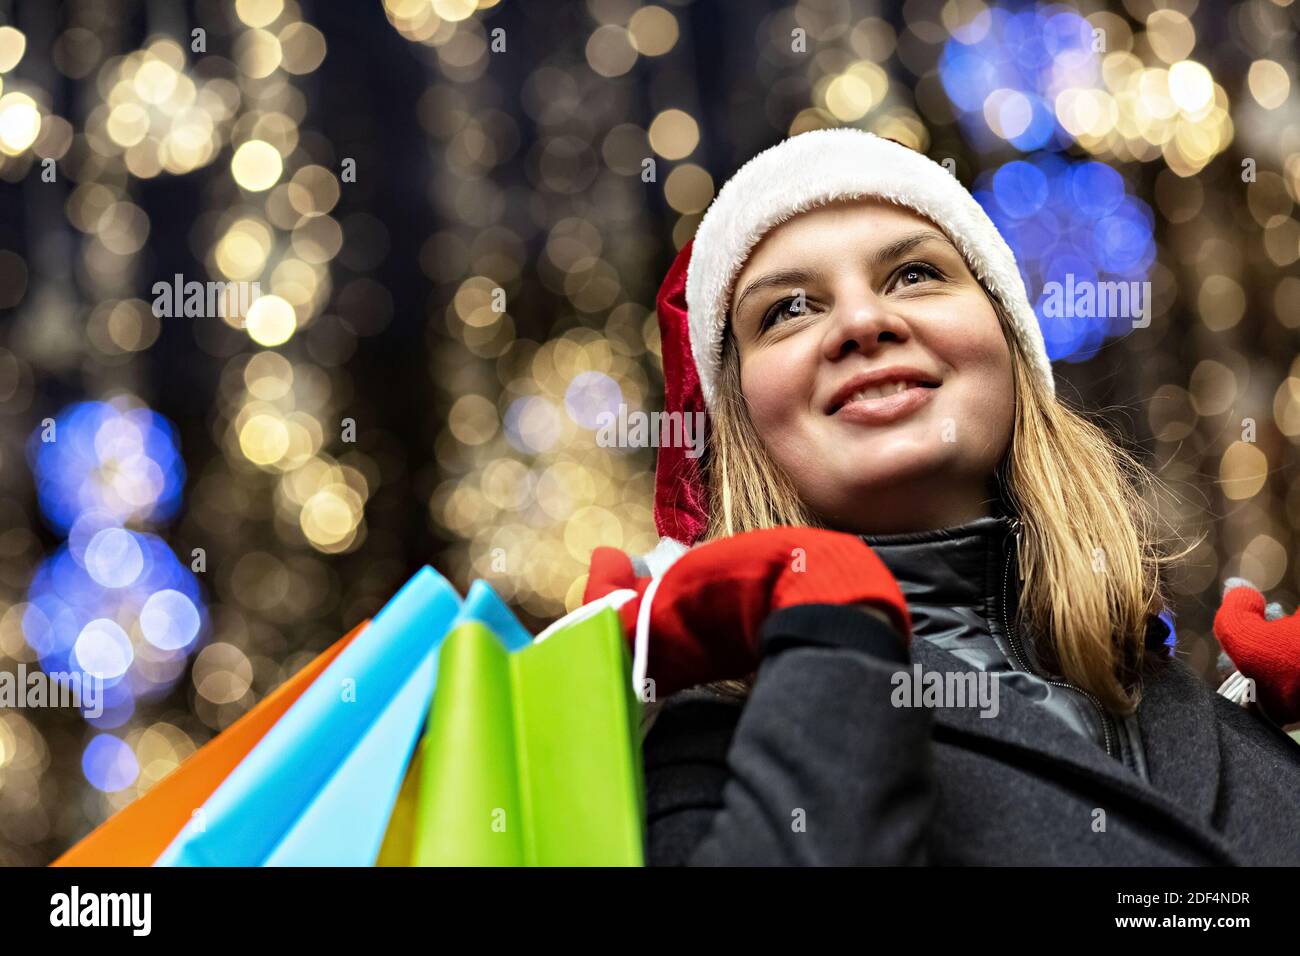 Eine Frau mit langen Haaren und einem Weihnachtsmütze am Fenster eines Stadtladens mit Einkäufen in bunten Papiertüten. Einkaufen im neuen Jahr. Stockfoto